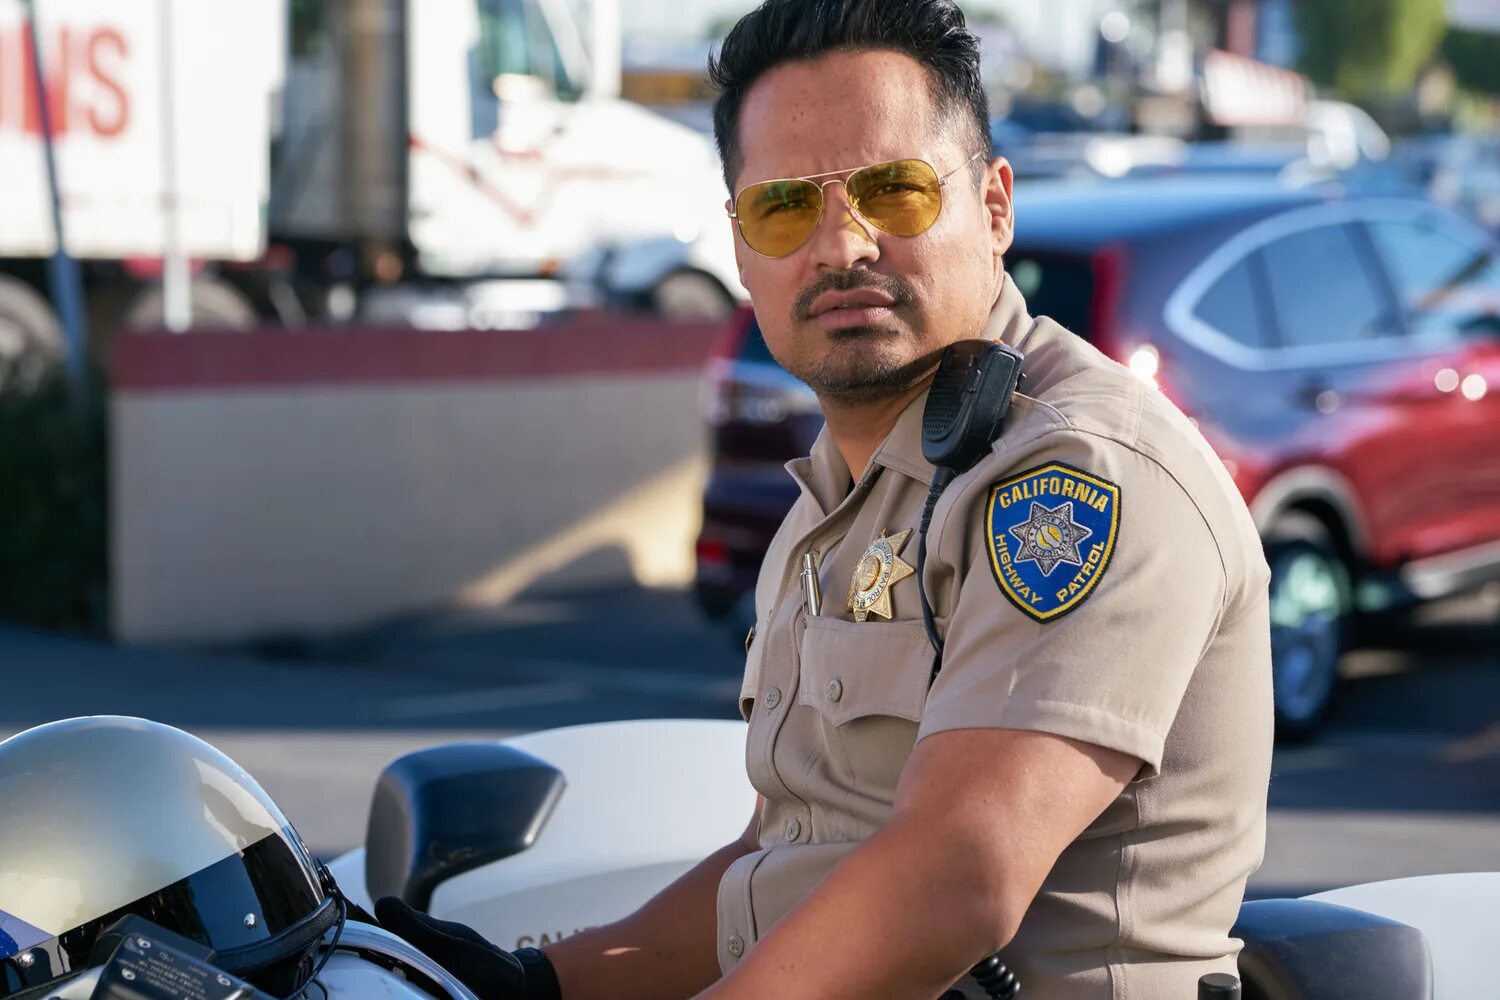 Патруль кинопоиск. Калифорнийский дорожный патруль Chips, США, 2017.